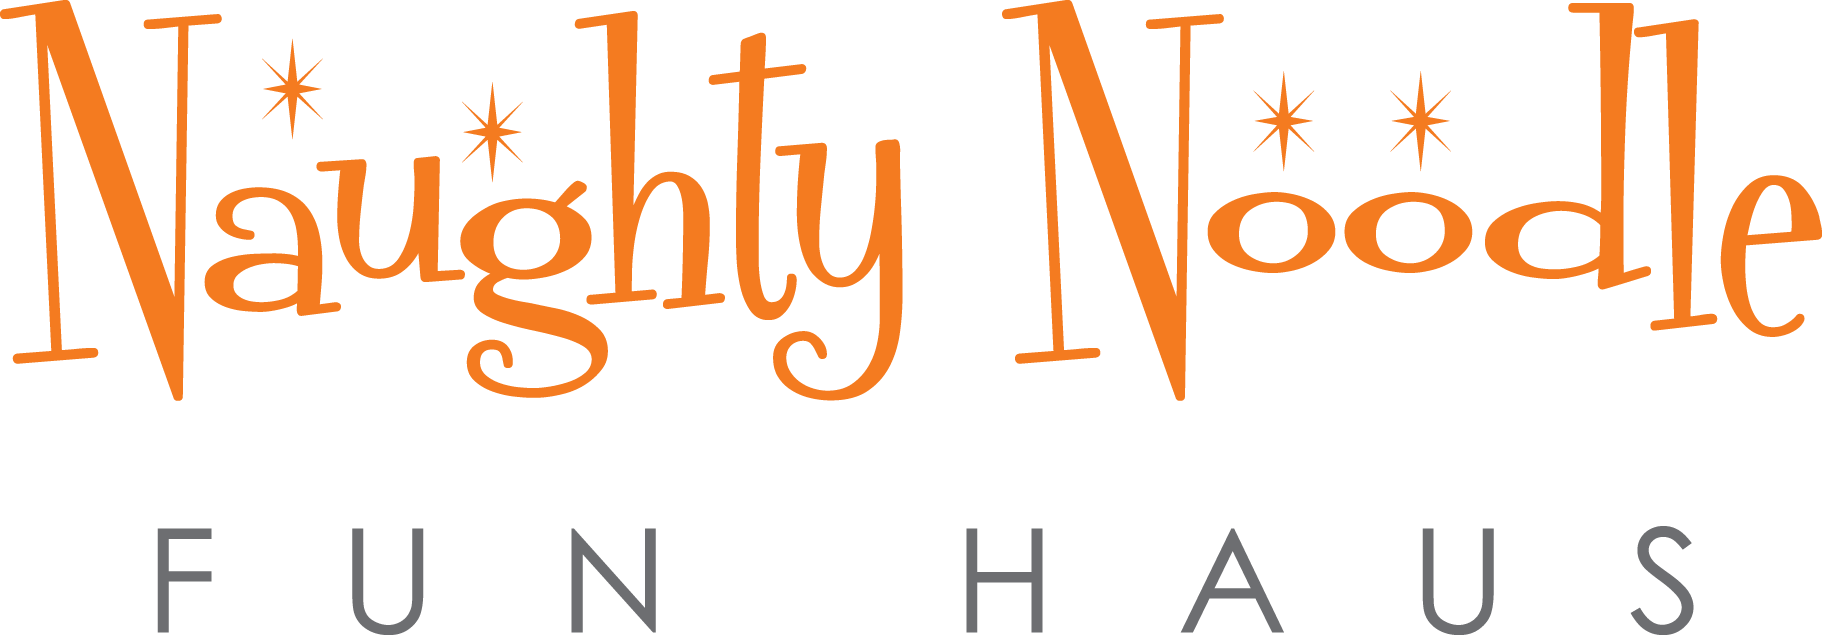 Naughty Noodle Funhaus Logo